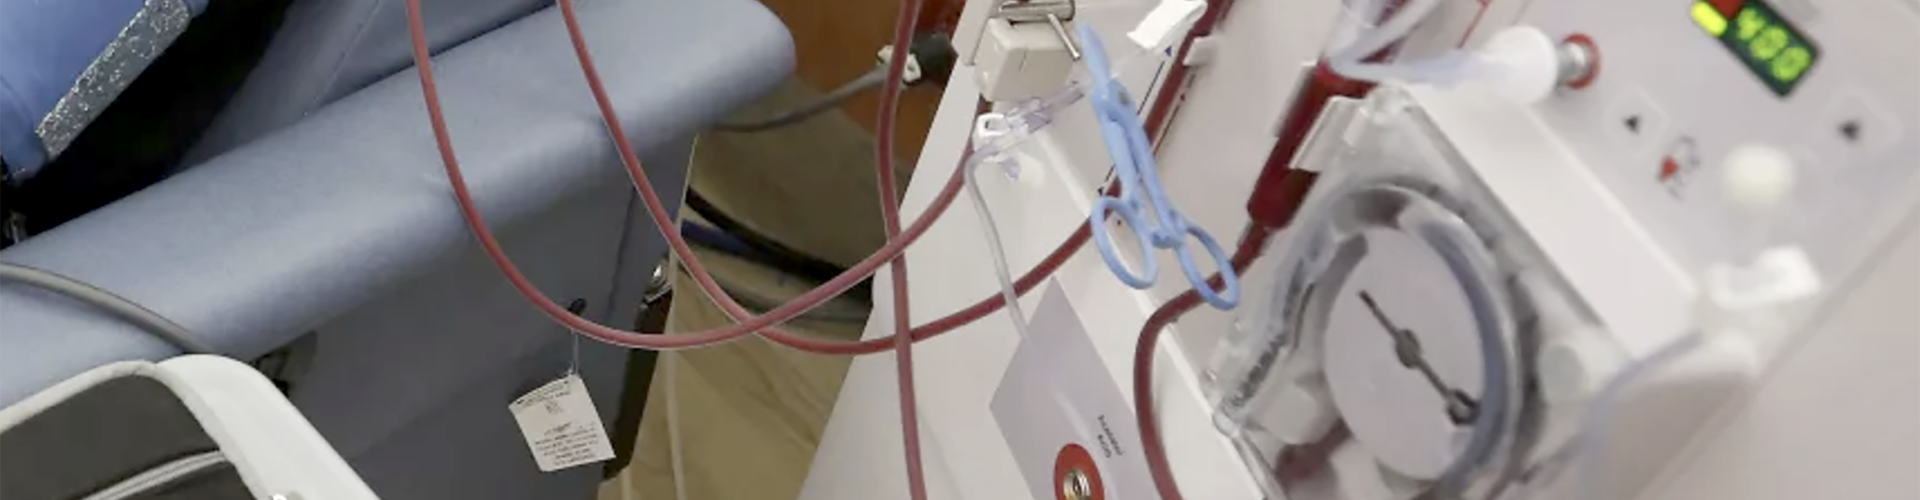  Renaloo demande la mise en œuvre d’un plan d’action d’urgence pour sauver les patients dialysés en Nouvelle Calédonie